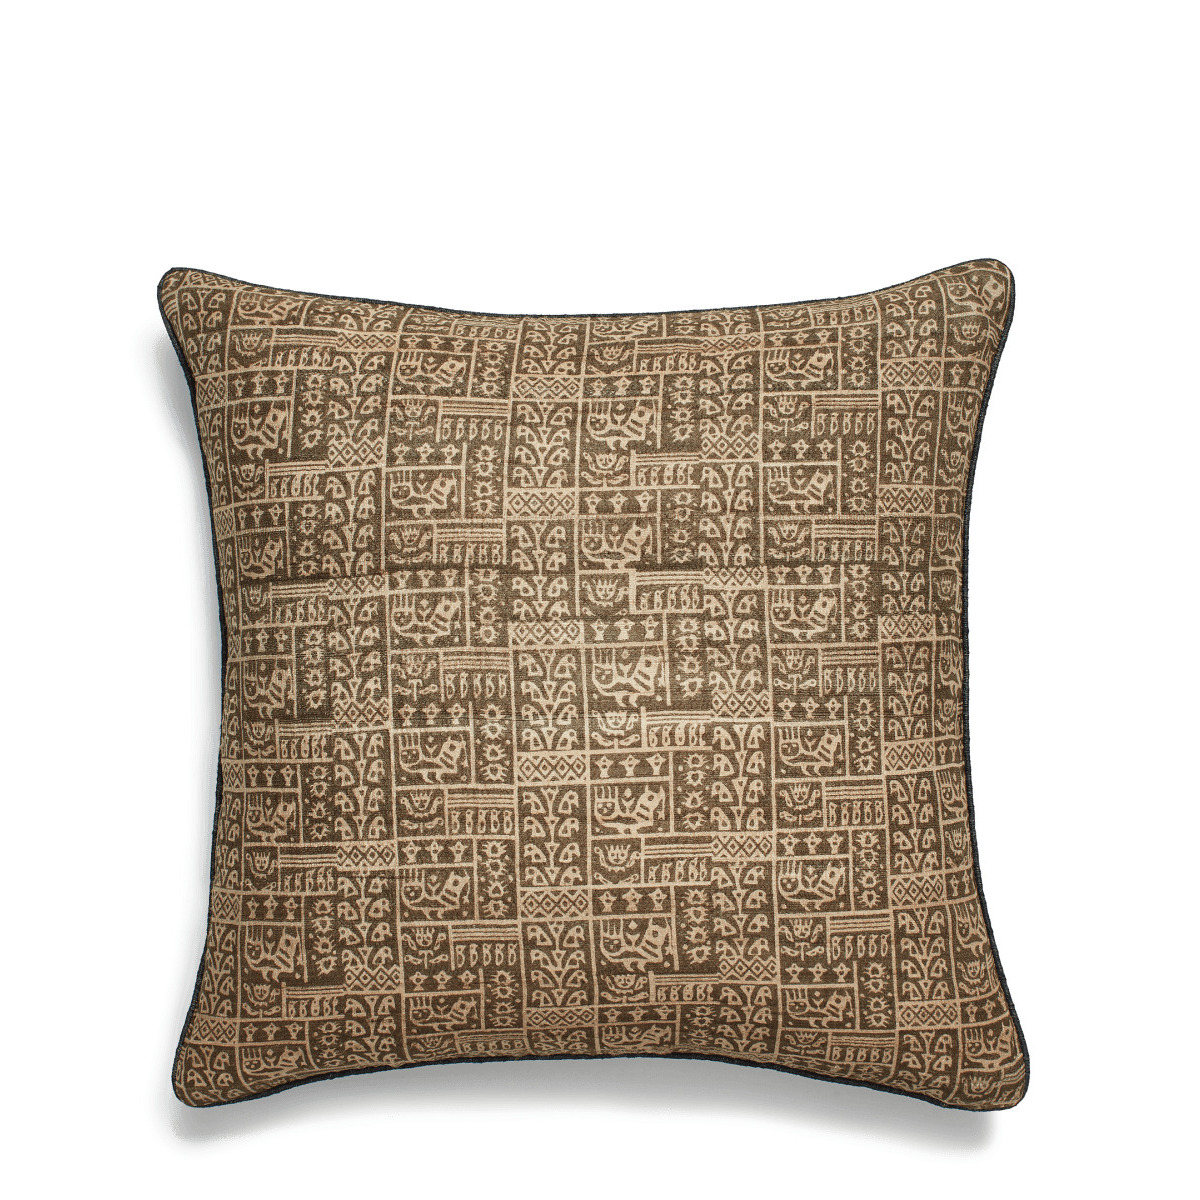 OKA, Grassetto Symbols Cushion Cover - Cedar Green/Indigo, Cushion Covers, Cotton/Silk, Abstract